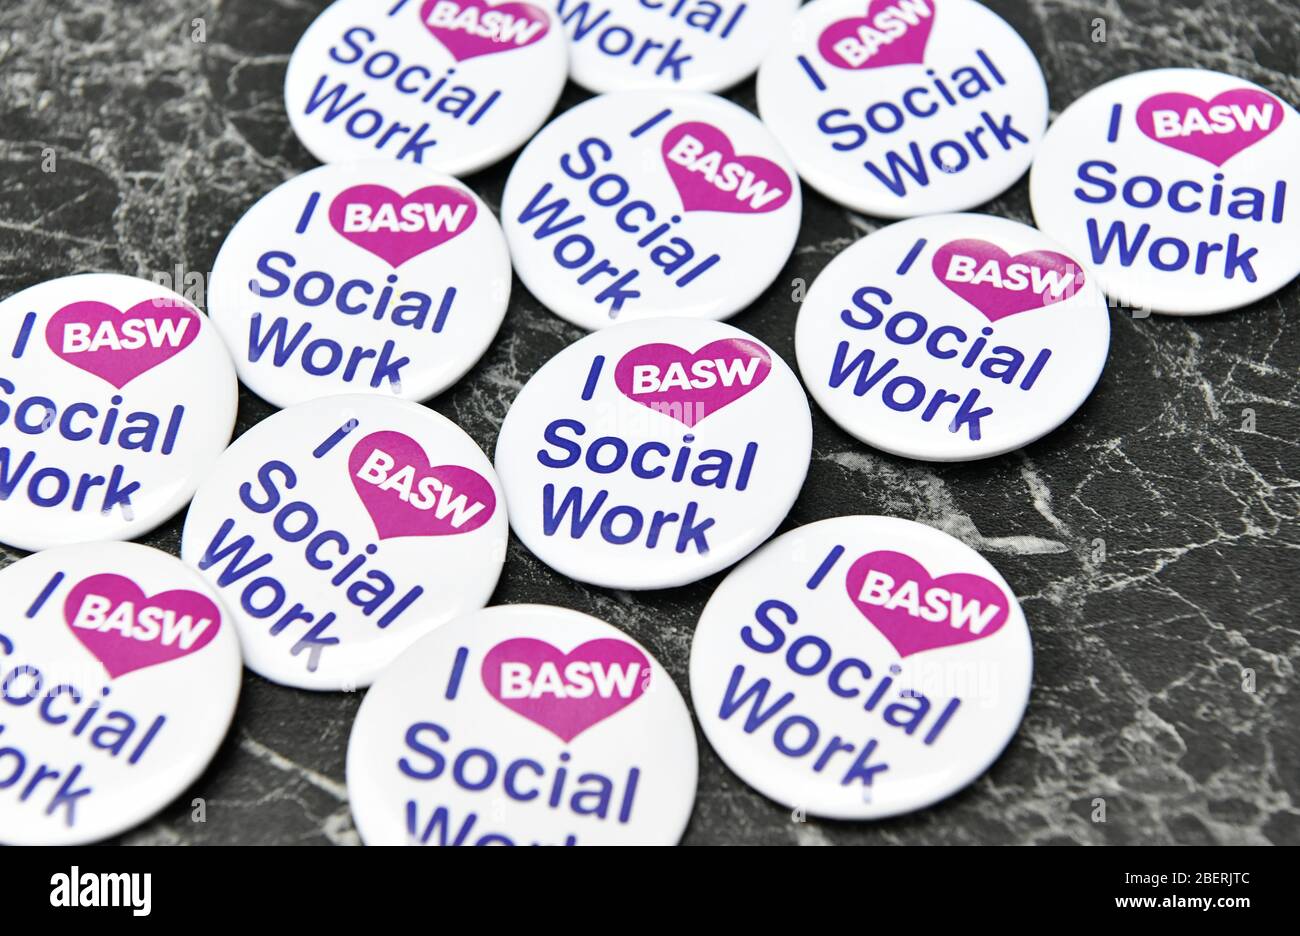 I 'Love' credenciales de botón de trabajo social en una mesa en una conferencia de trabajo social en Birmingham, Inglaterra, Reino Unido Foto de stock